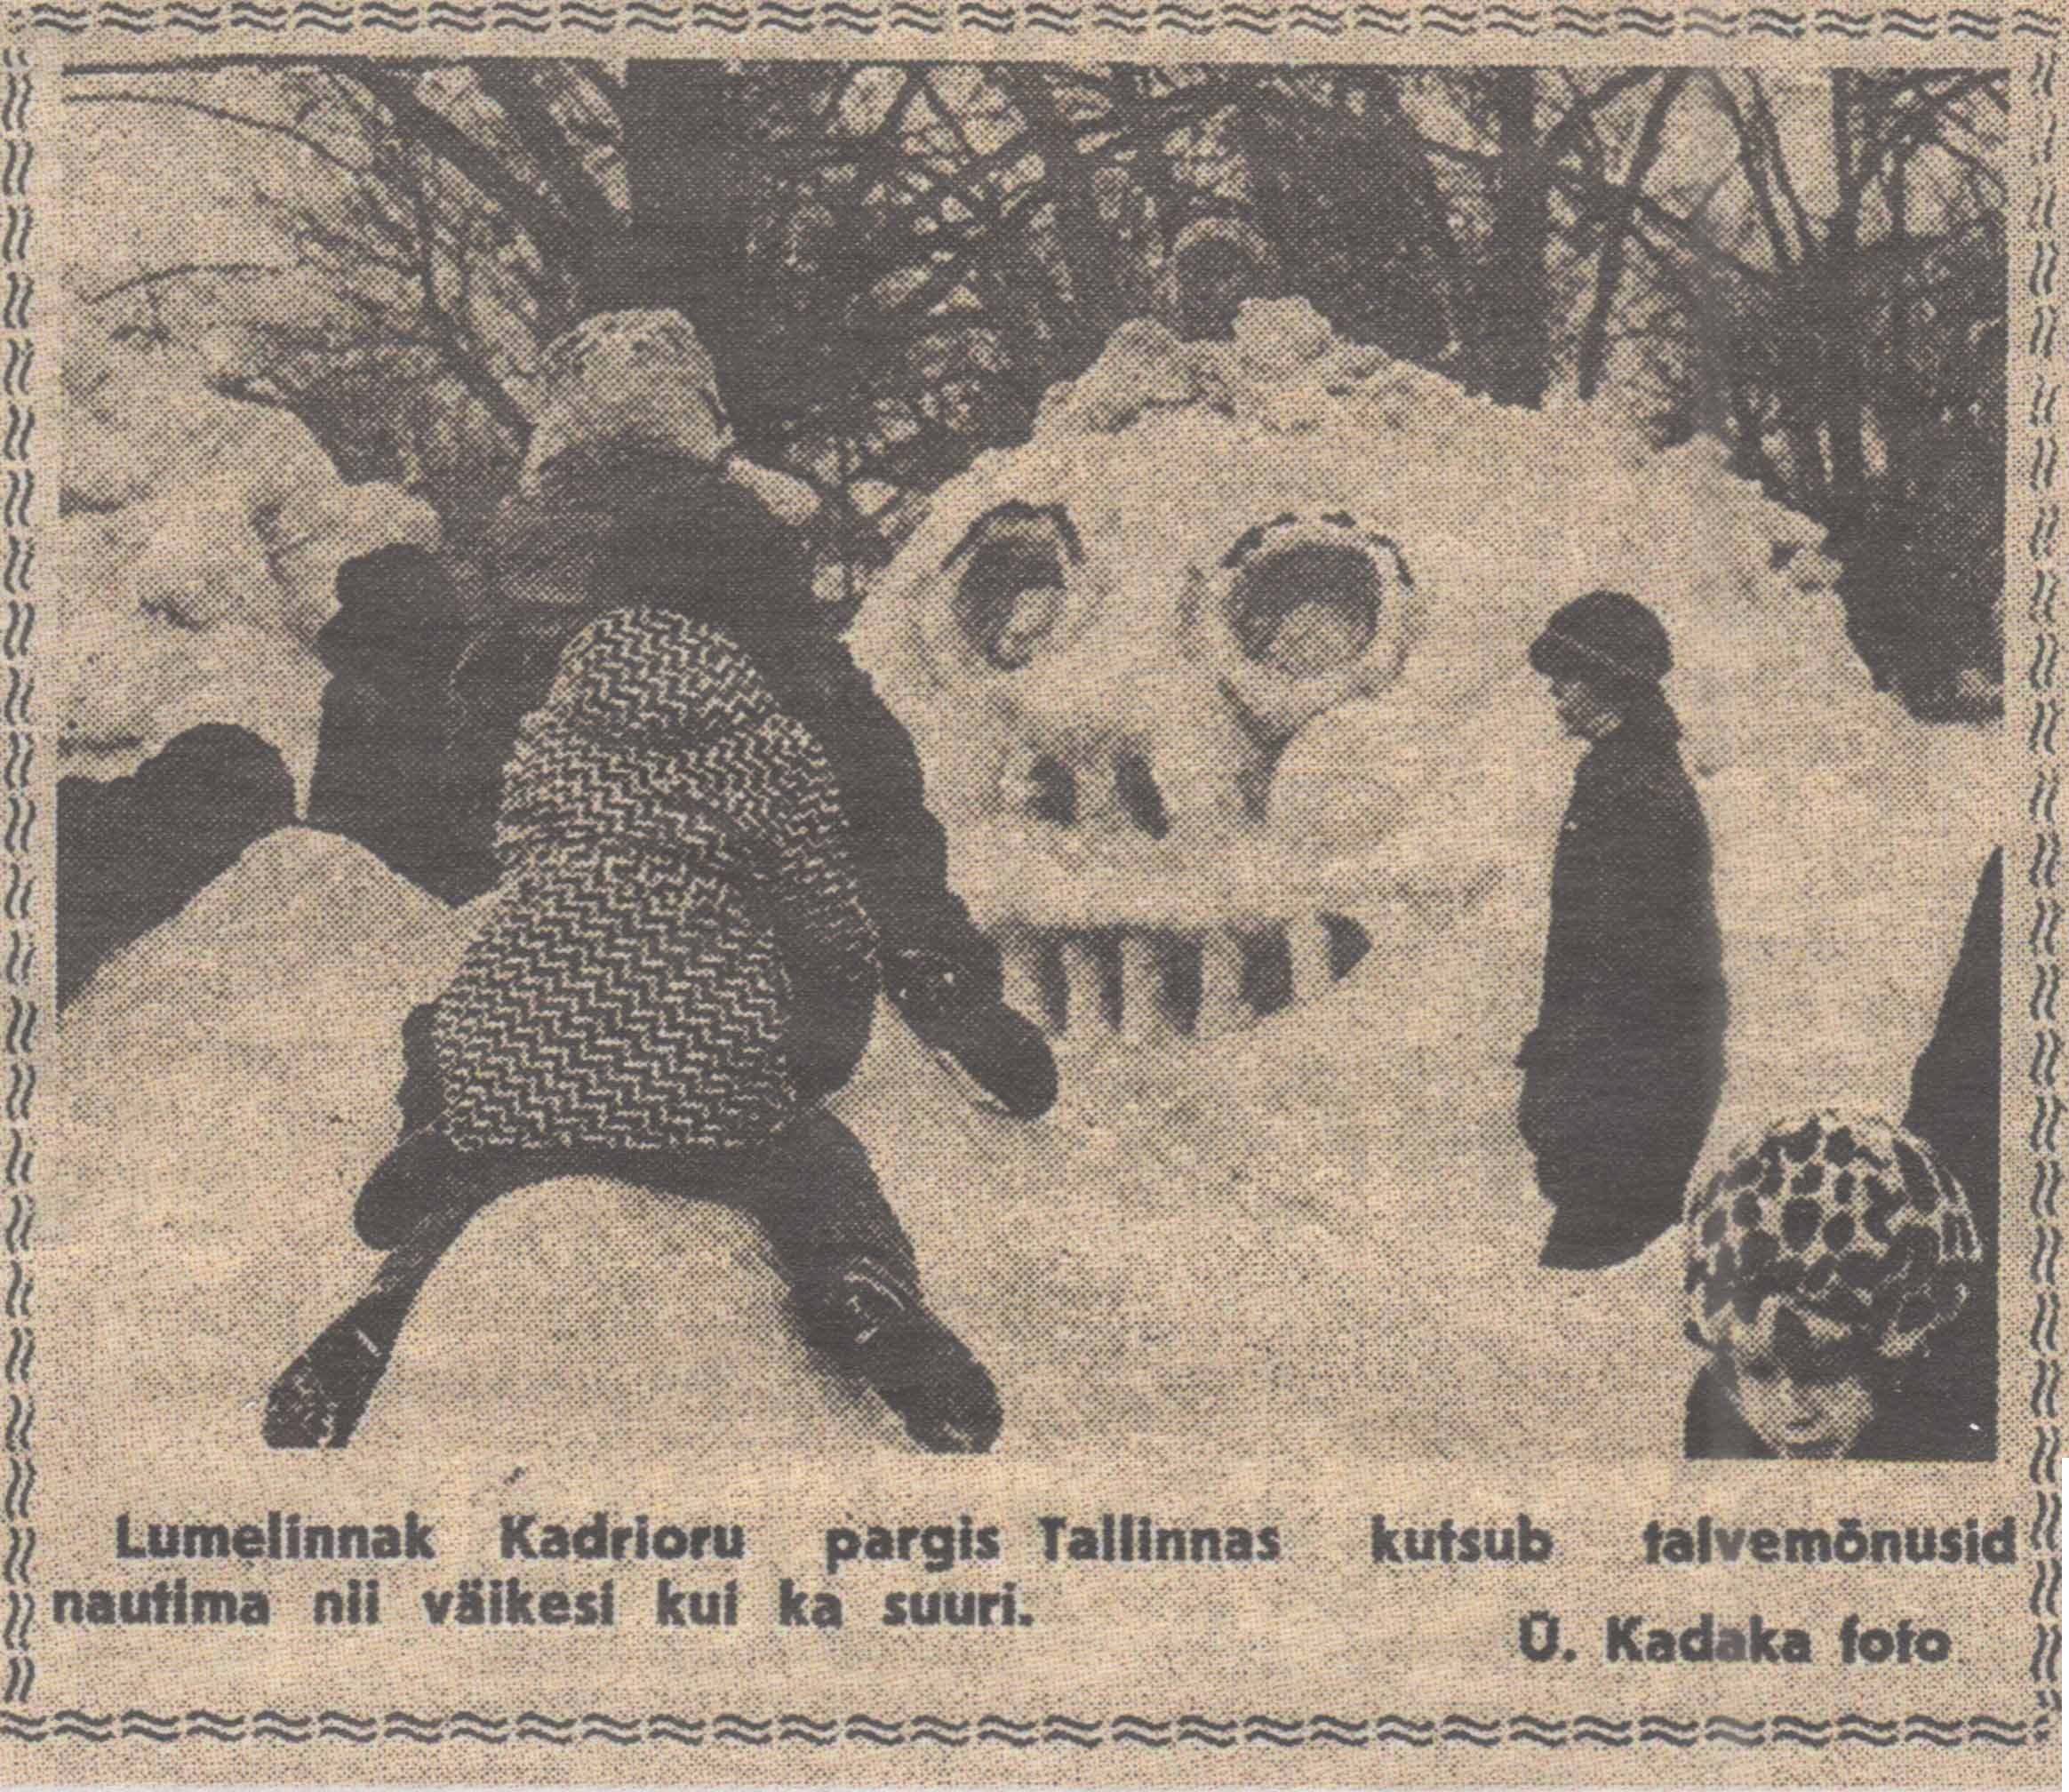 Первый таллиннский снежный городок в Кадриорге. Снимок из газеты Harju Elu, февраль 1977 года.